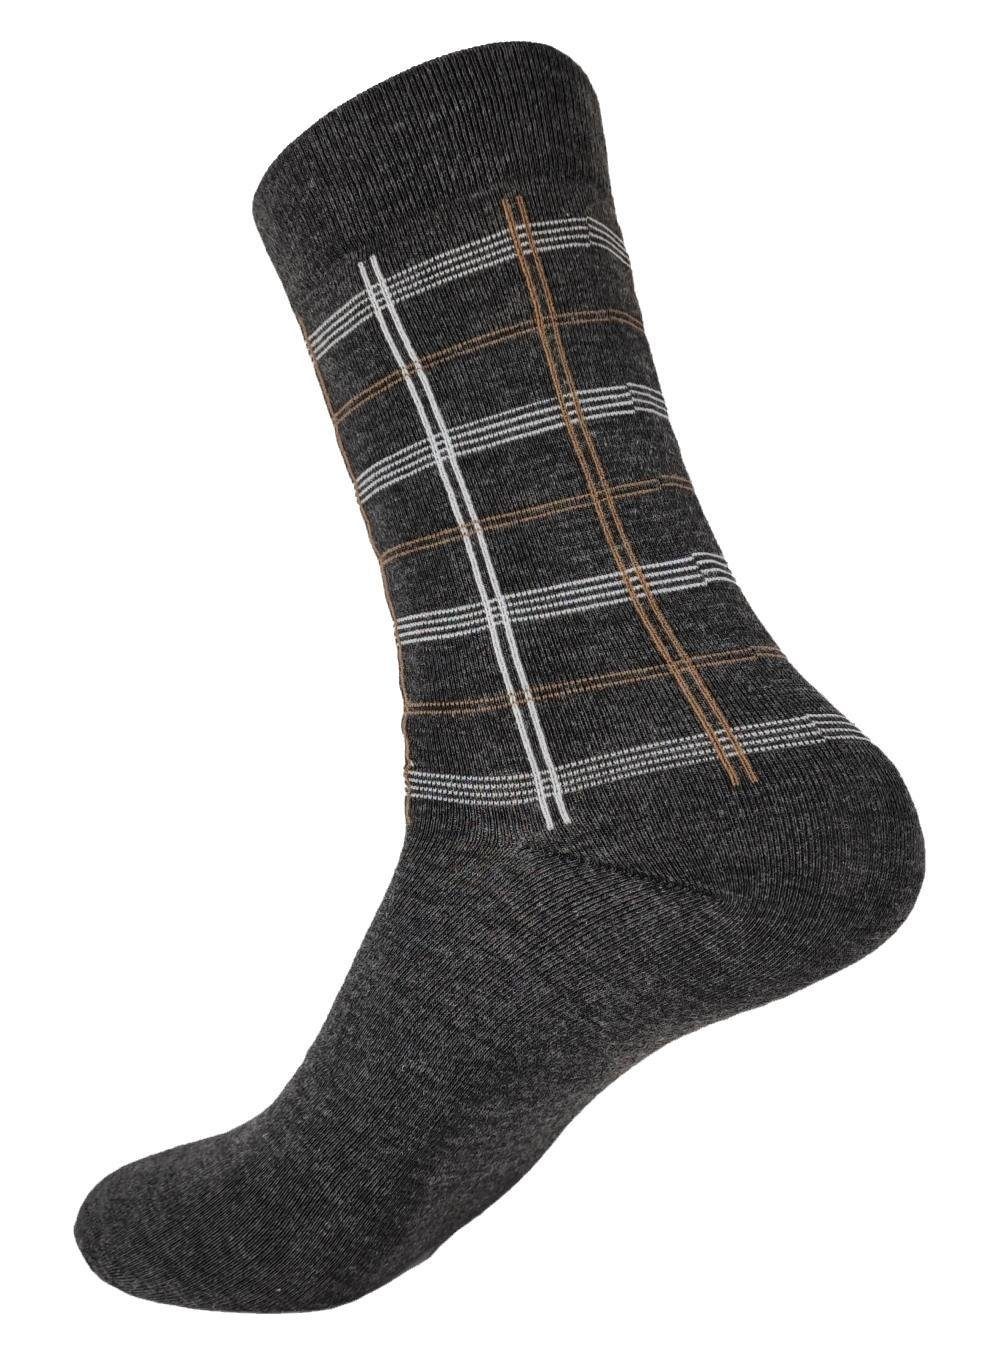 12 EloModa (12-Paar) Basicsocken Paar Socken klassischer Form Mix4 Sport Freizeit Paar, Muster Herren 12